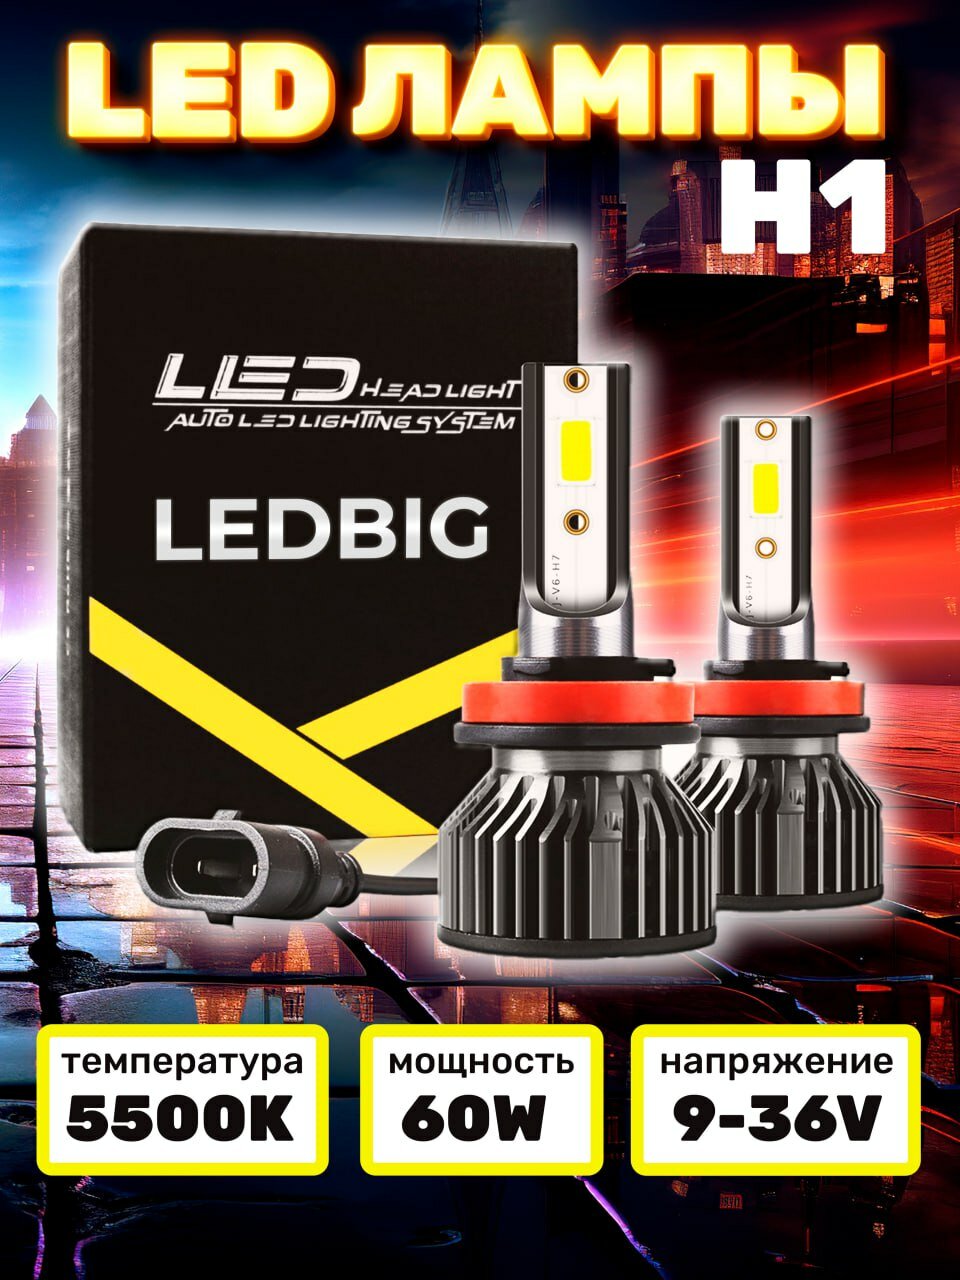 Светодиодные led лампы для авто диодные RUTENSE Н1 6000lm 60w 2 шт